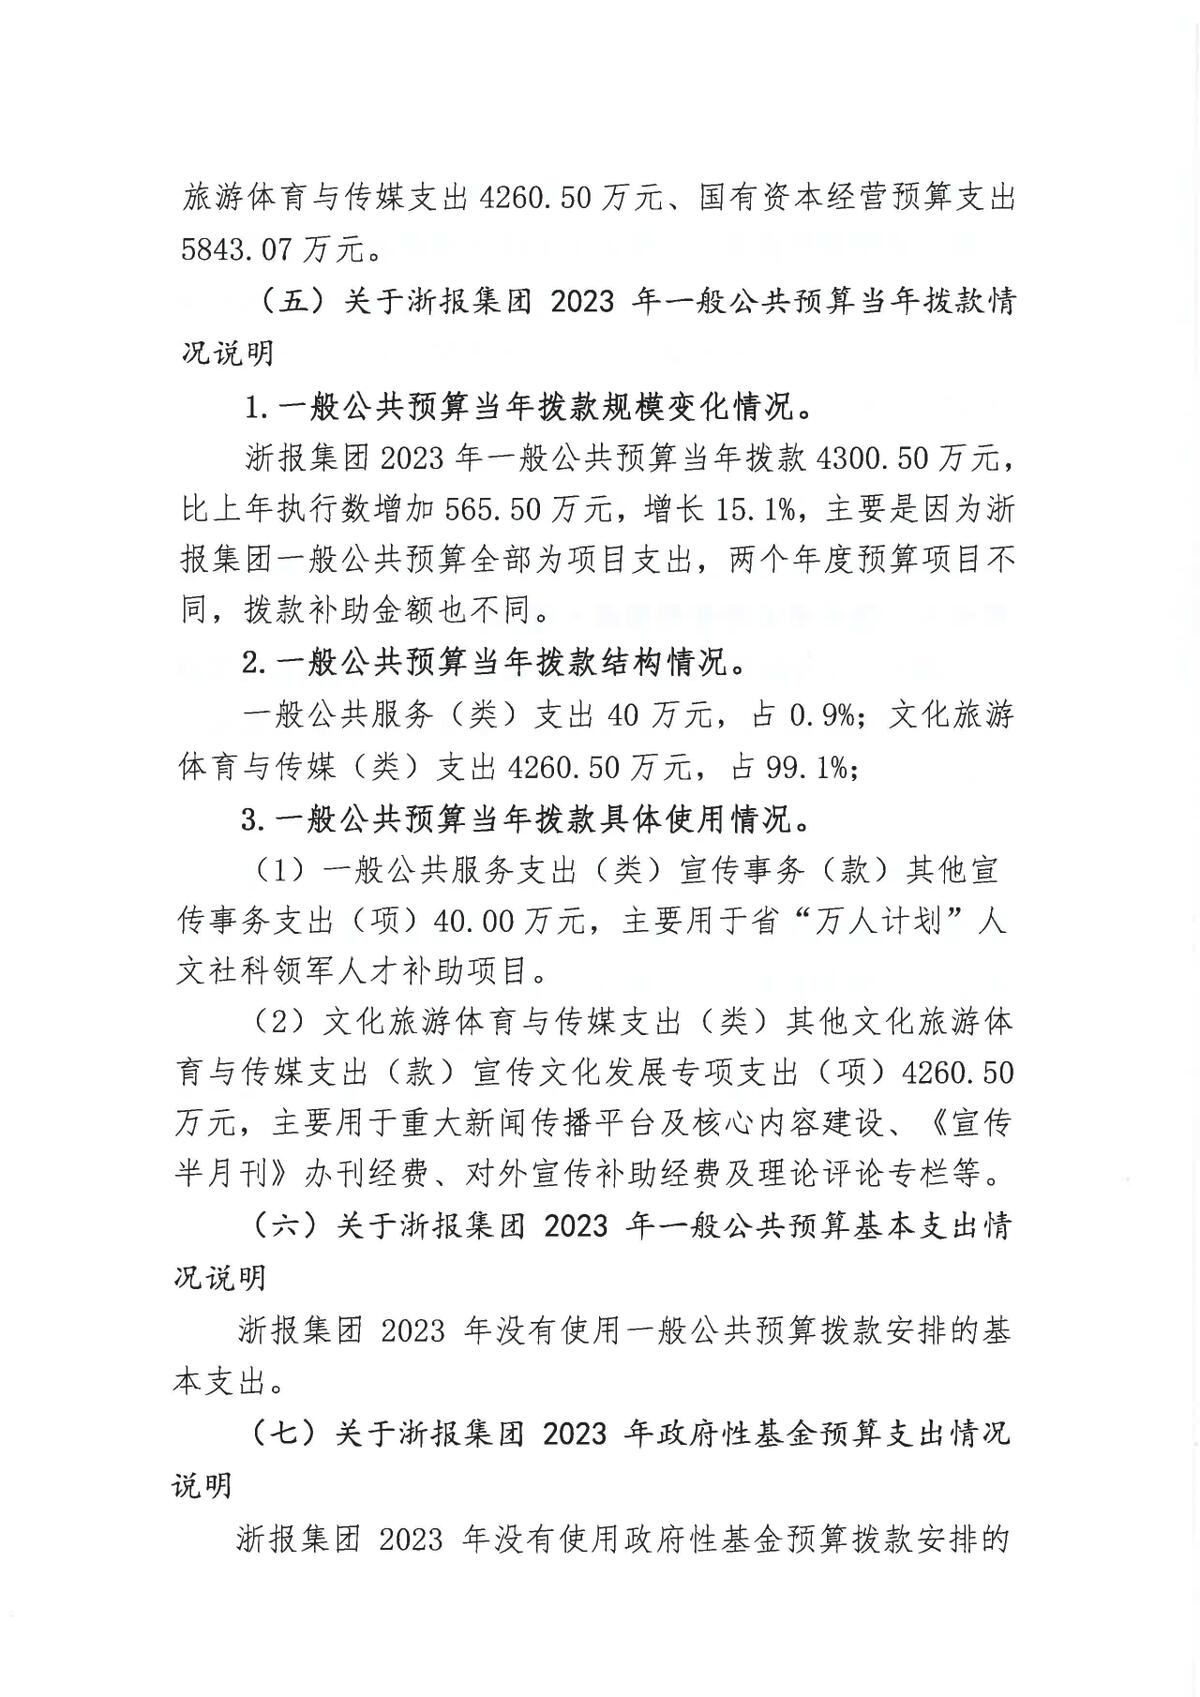 浙江日报报业集团2023年部门预算公开_页面_06.jpg